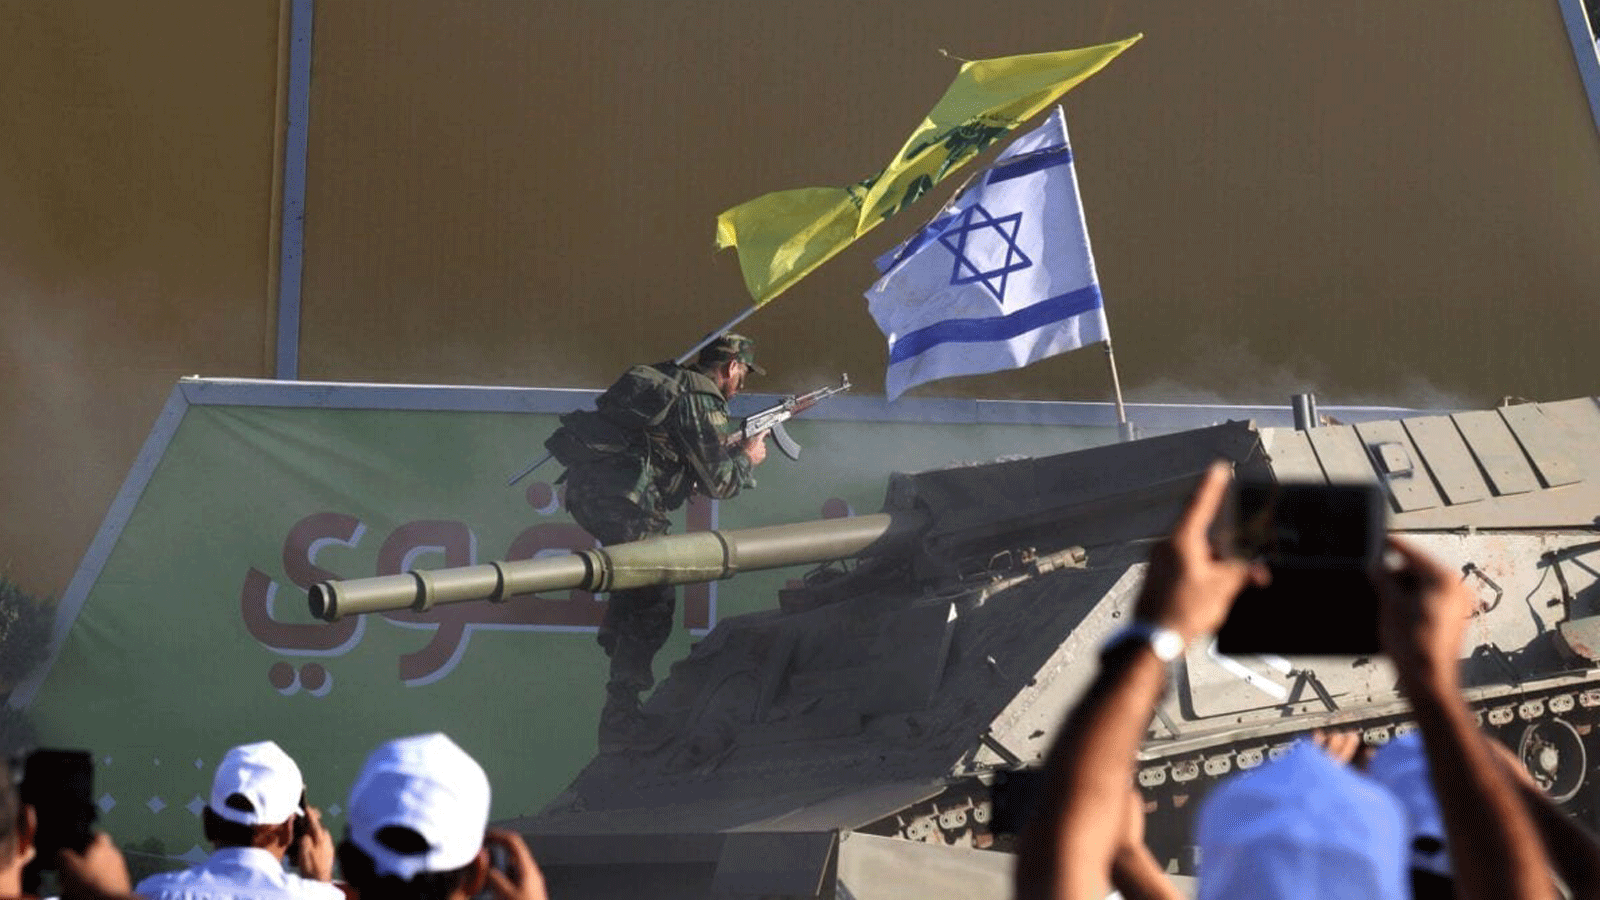 أعضاء في حزب الله الشيعي اللبناني يقومون بإعادة تمثيل هجوم على دبابة إسرائيلية بمناسبة الذكرى 11 لانتهاء حرب 2006 مع إسرائيل، في قرية الخيام في جنوب لبنان. 13 آب/أغسطس، 2017 